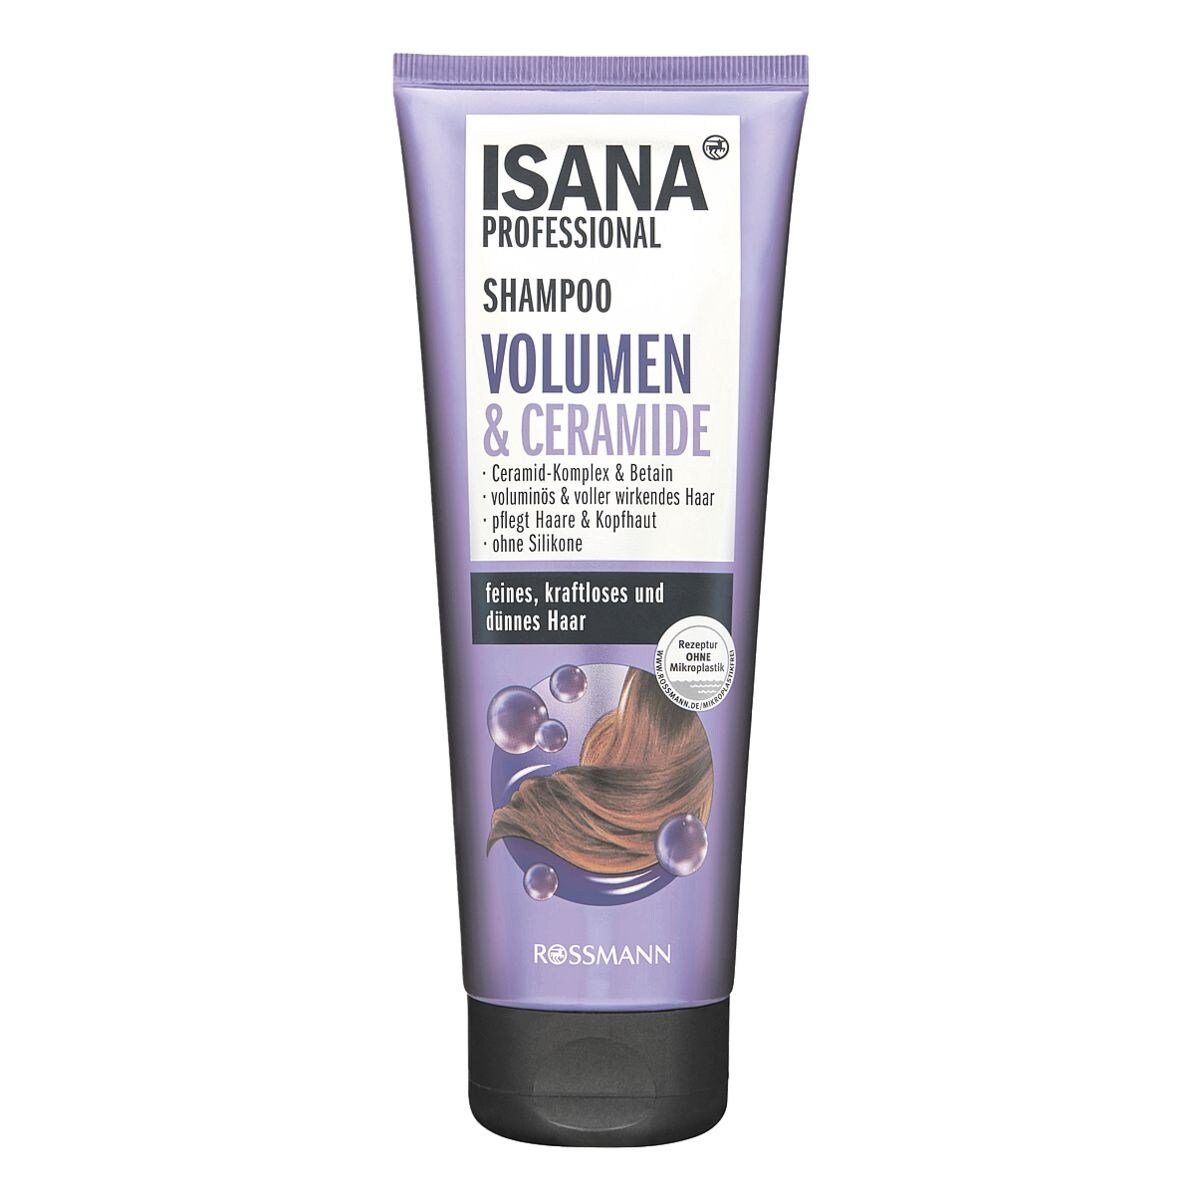 ISANA Haarshampoo Volumen & Ceramide, für feines, kraftloses und dünnes Haar